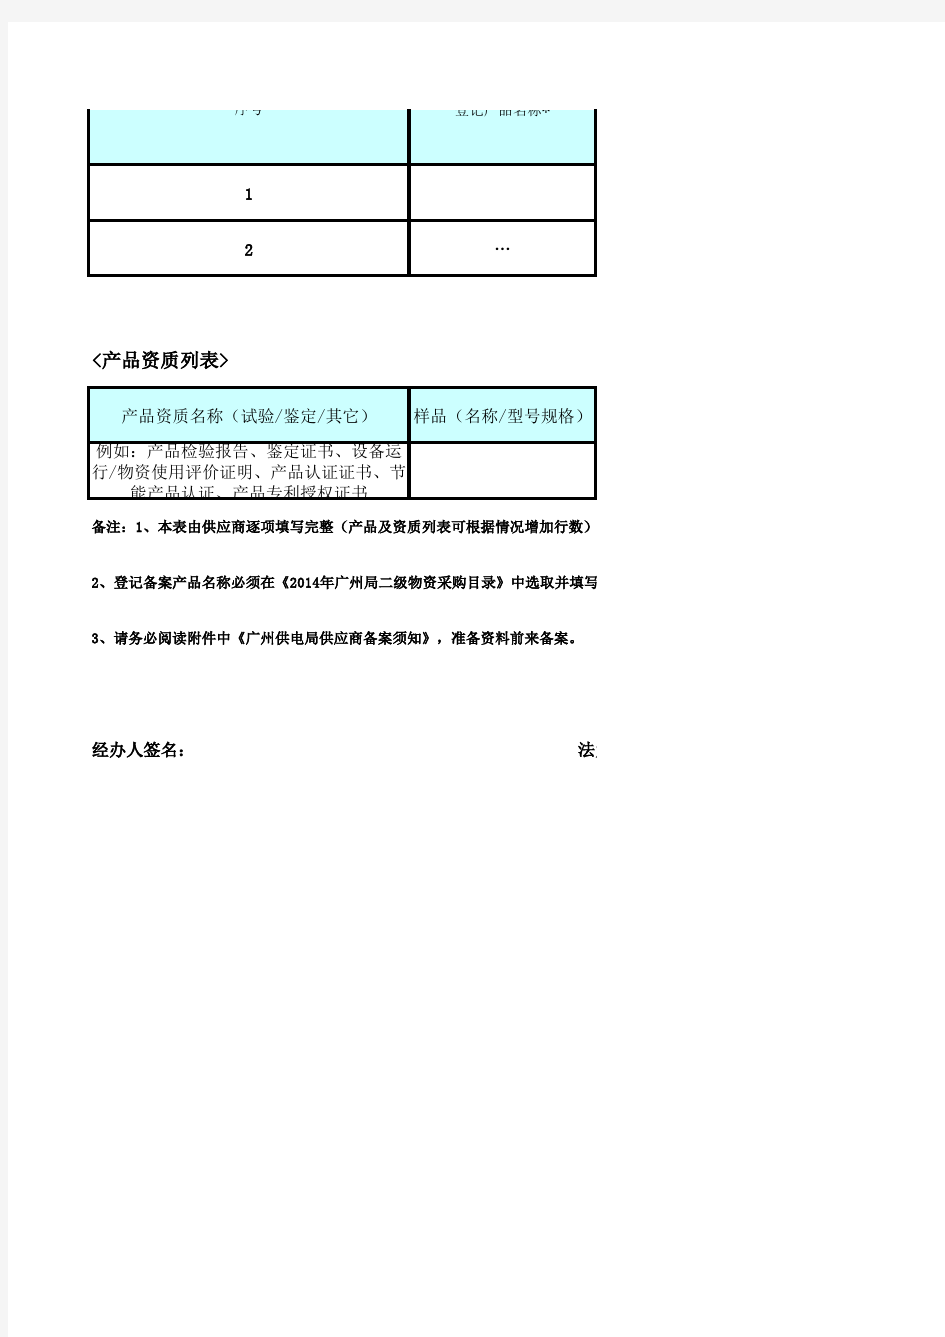 广州供电局供应商登记备案申请表